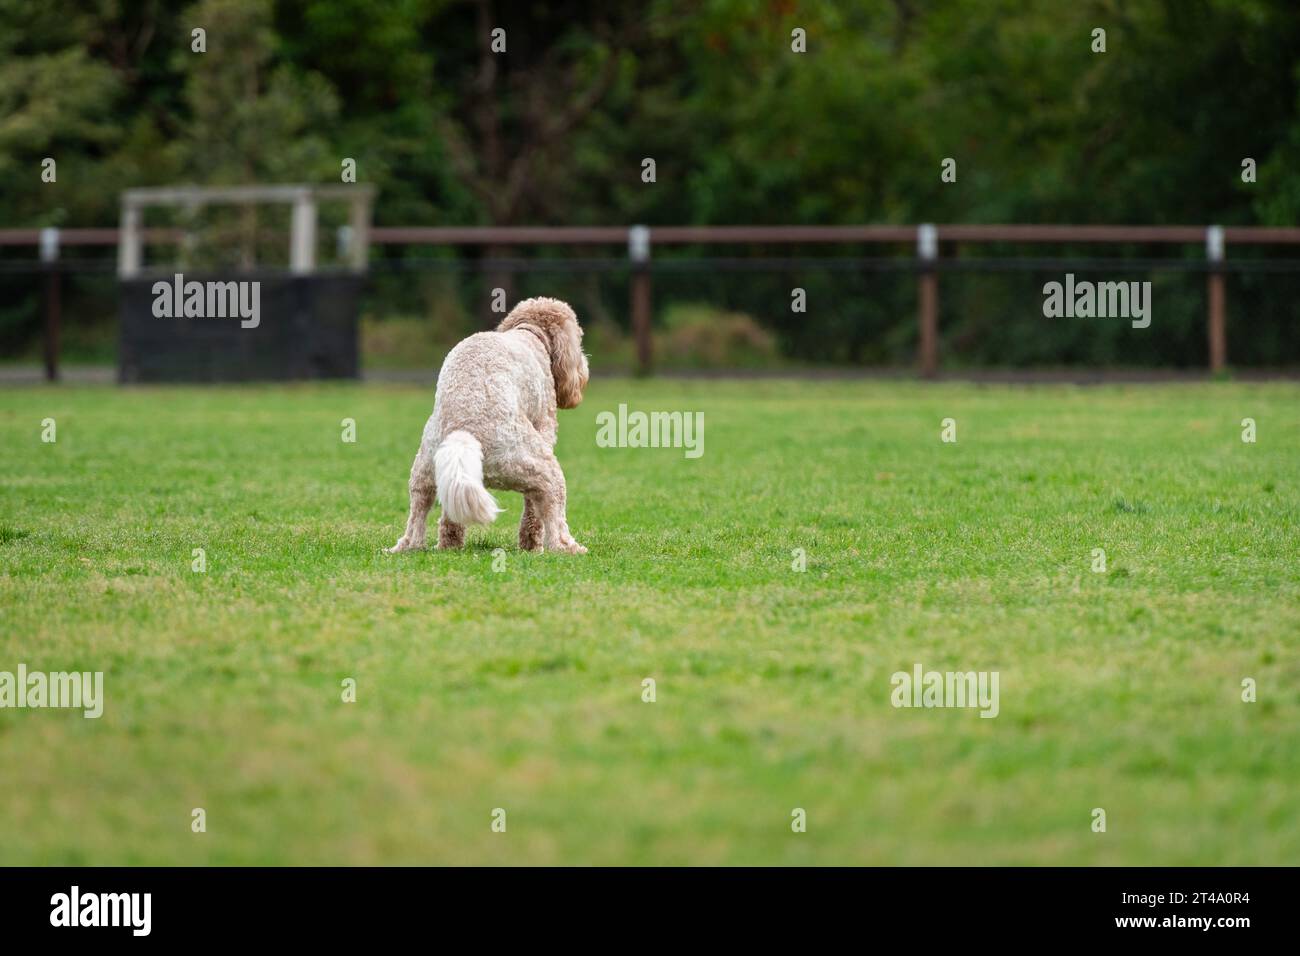 Retrato de un perro en el parque de perros pooping en la hierba verde Foto de stock